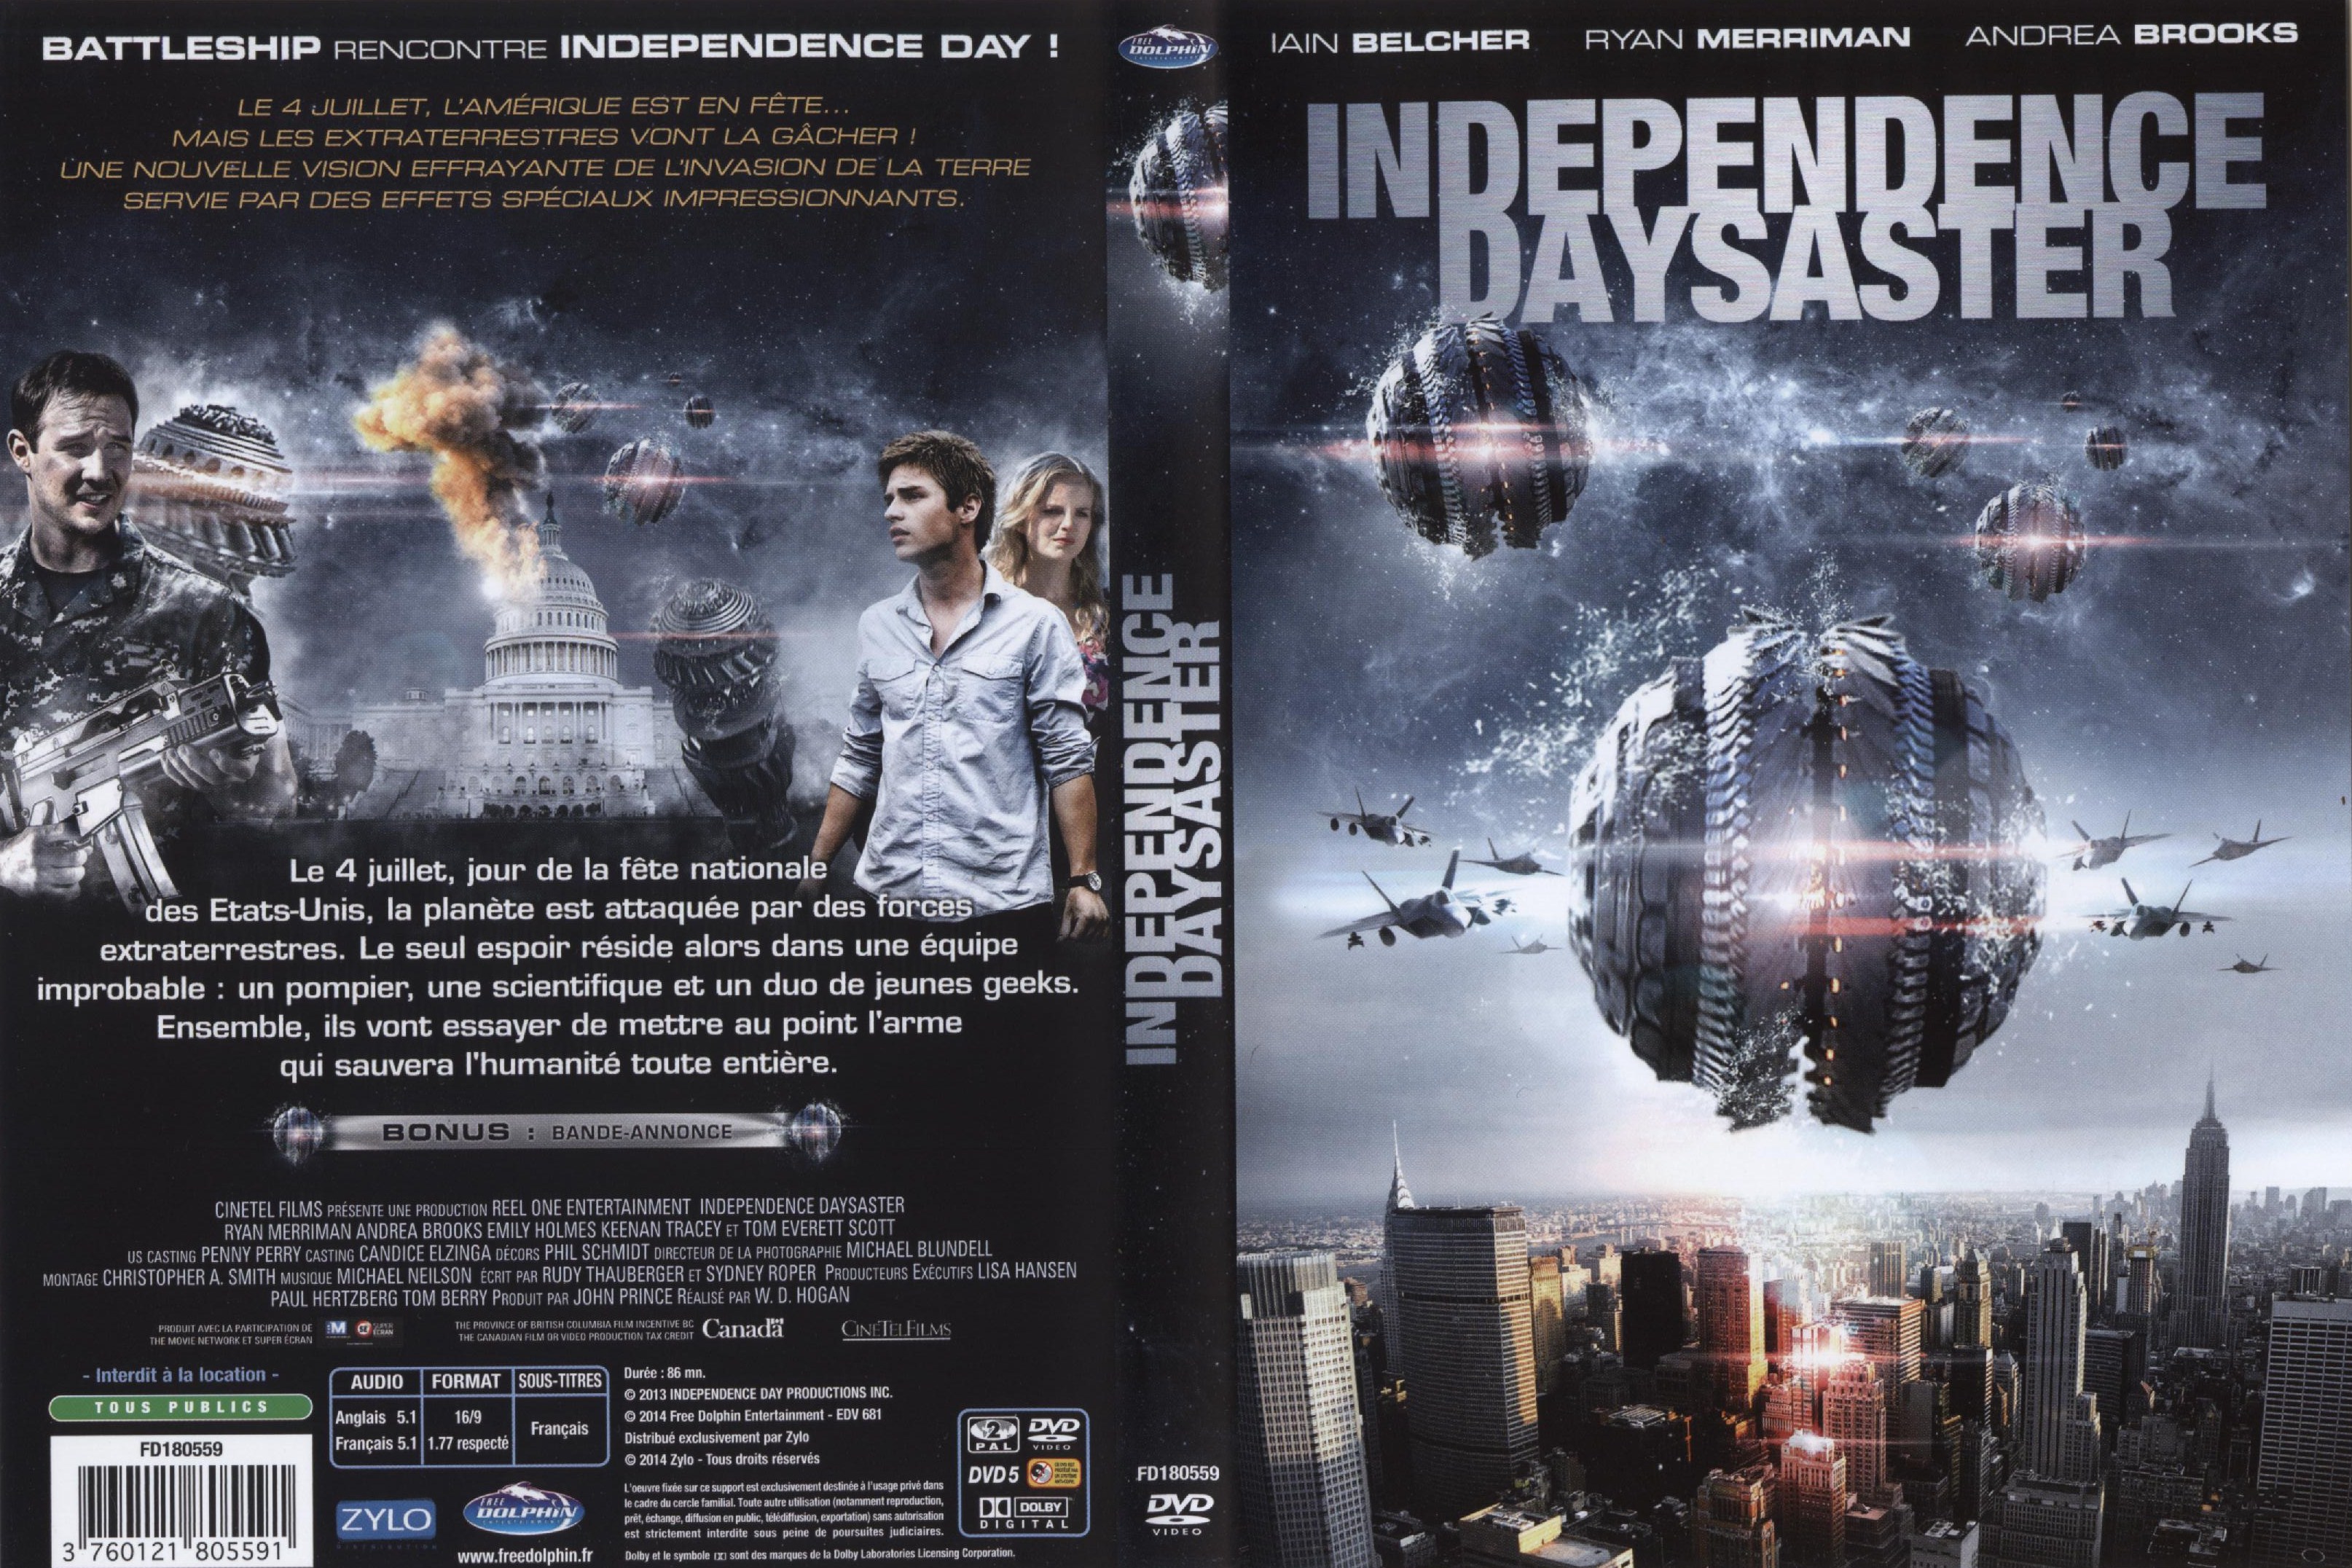 Jaquette DVD Independence Daysaster